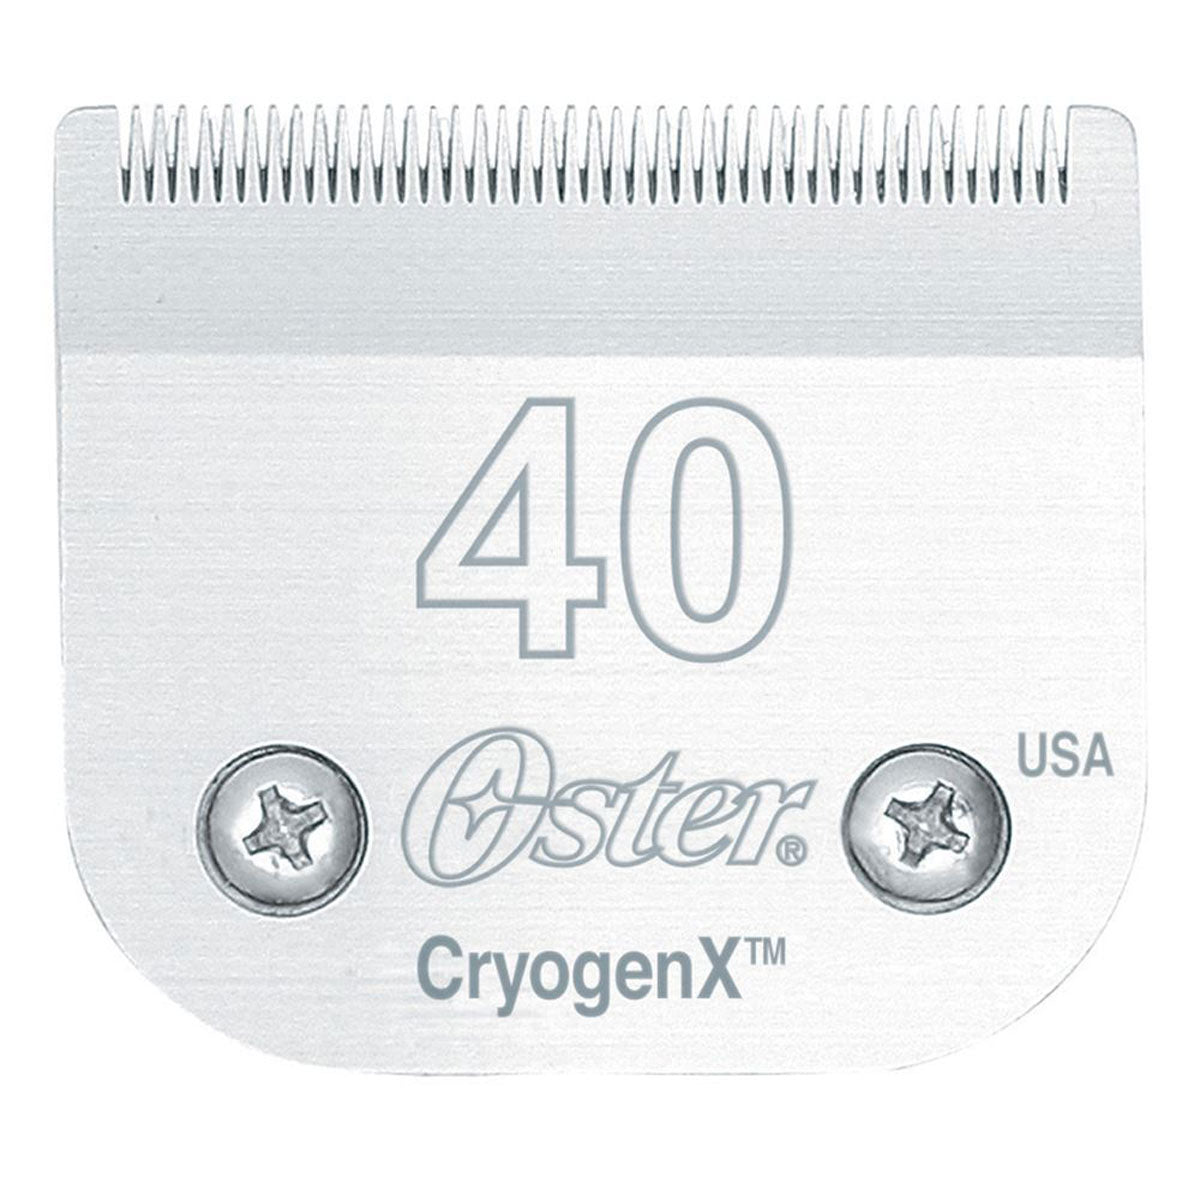 Oster Cryogen-X Clipper Blades A-5